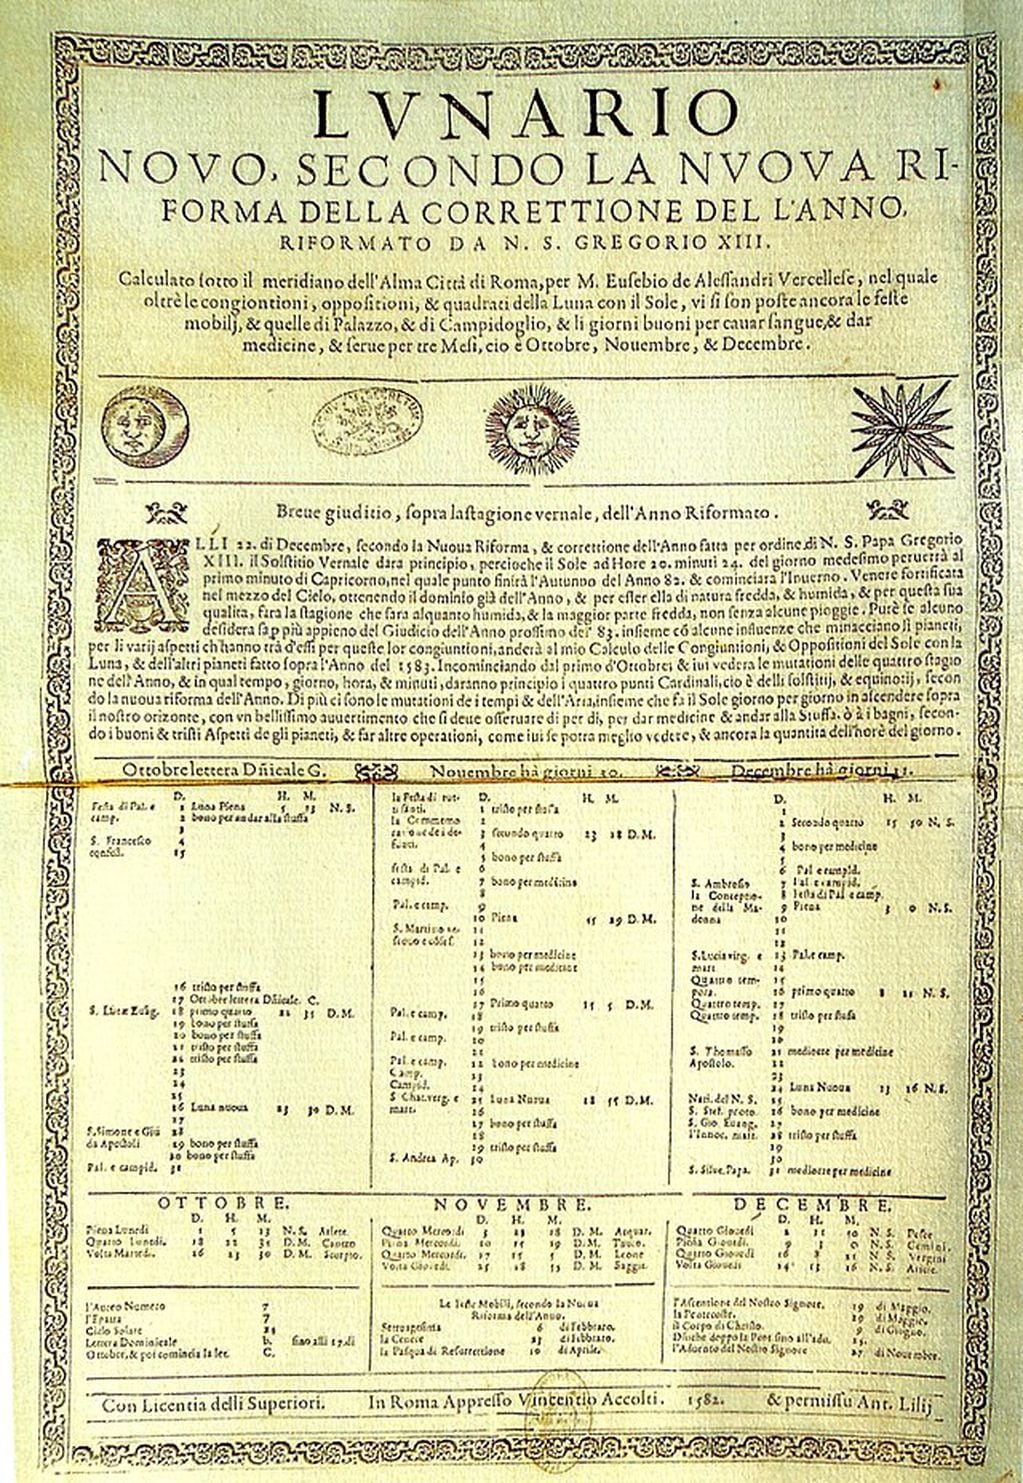 El Lunario del Vaticano y la información del acerca de la reforma del calendario Juliano por orden del Papa Gregorio XIII / foto Wikimedia Commons